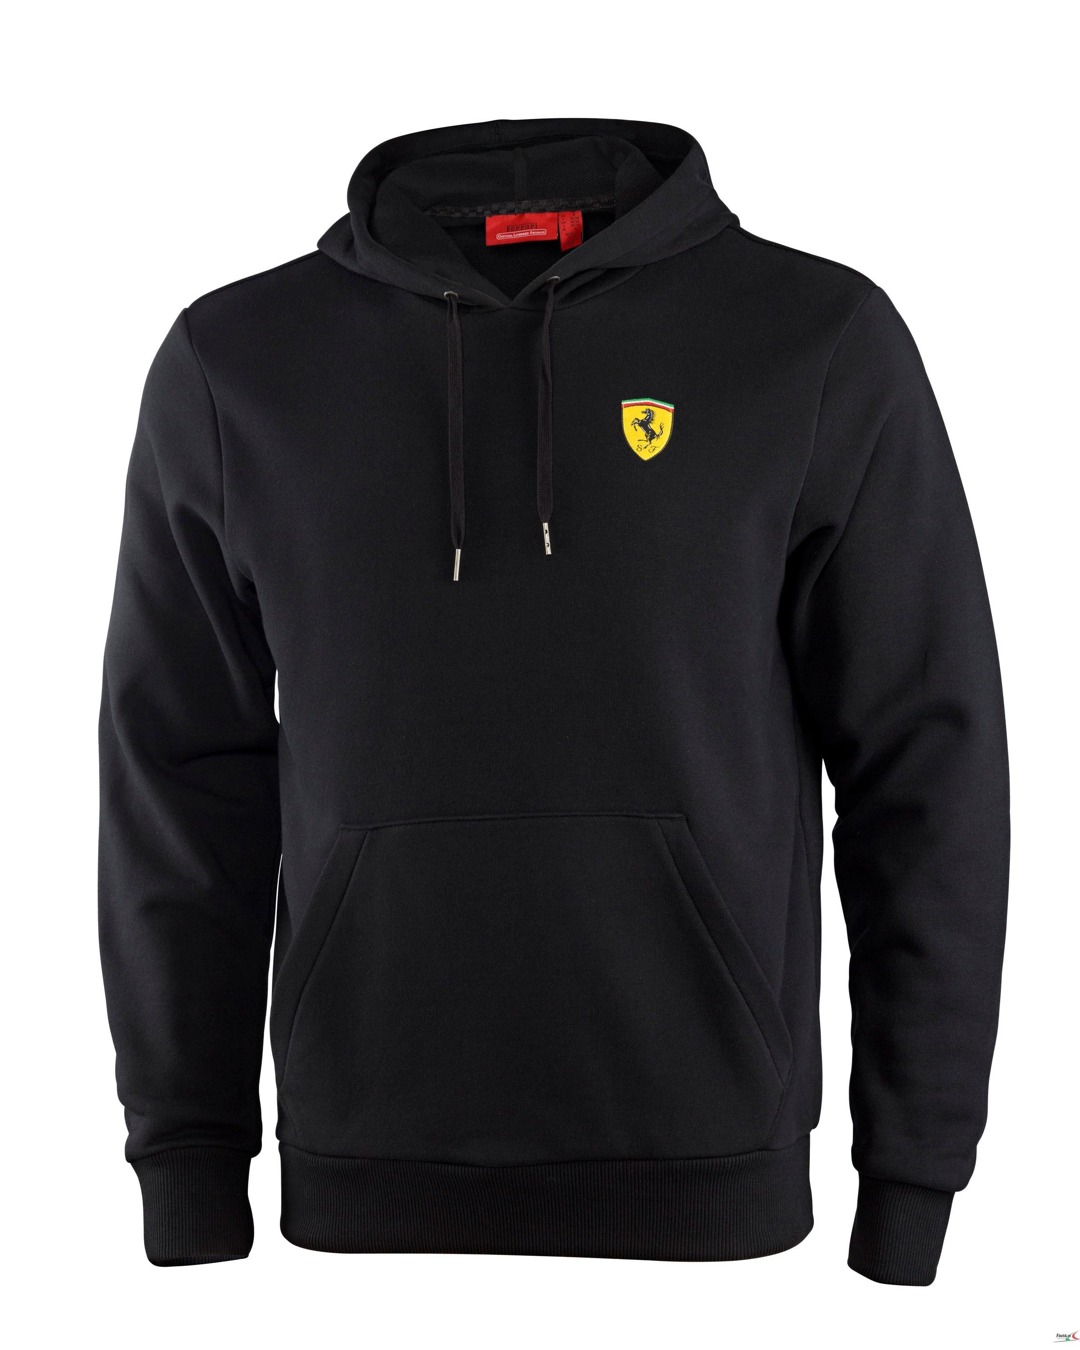 Bluza Ferrari hooded Sweatshirt - Black 3 | FERRARI SWEATSHIRT ...